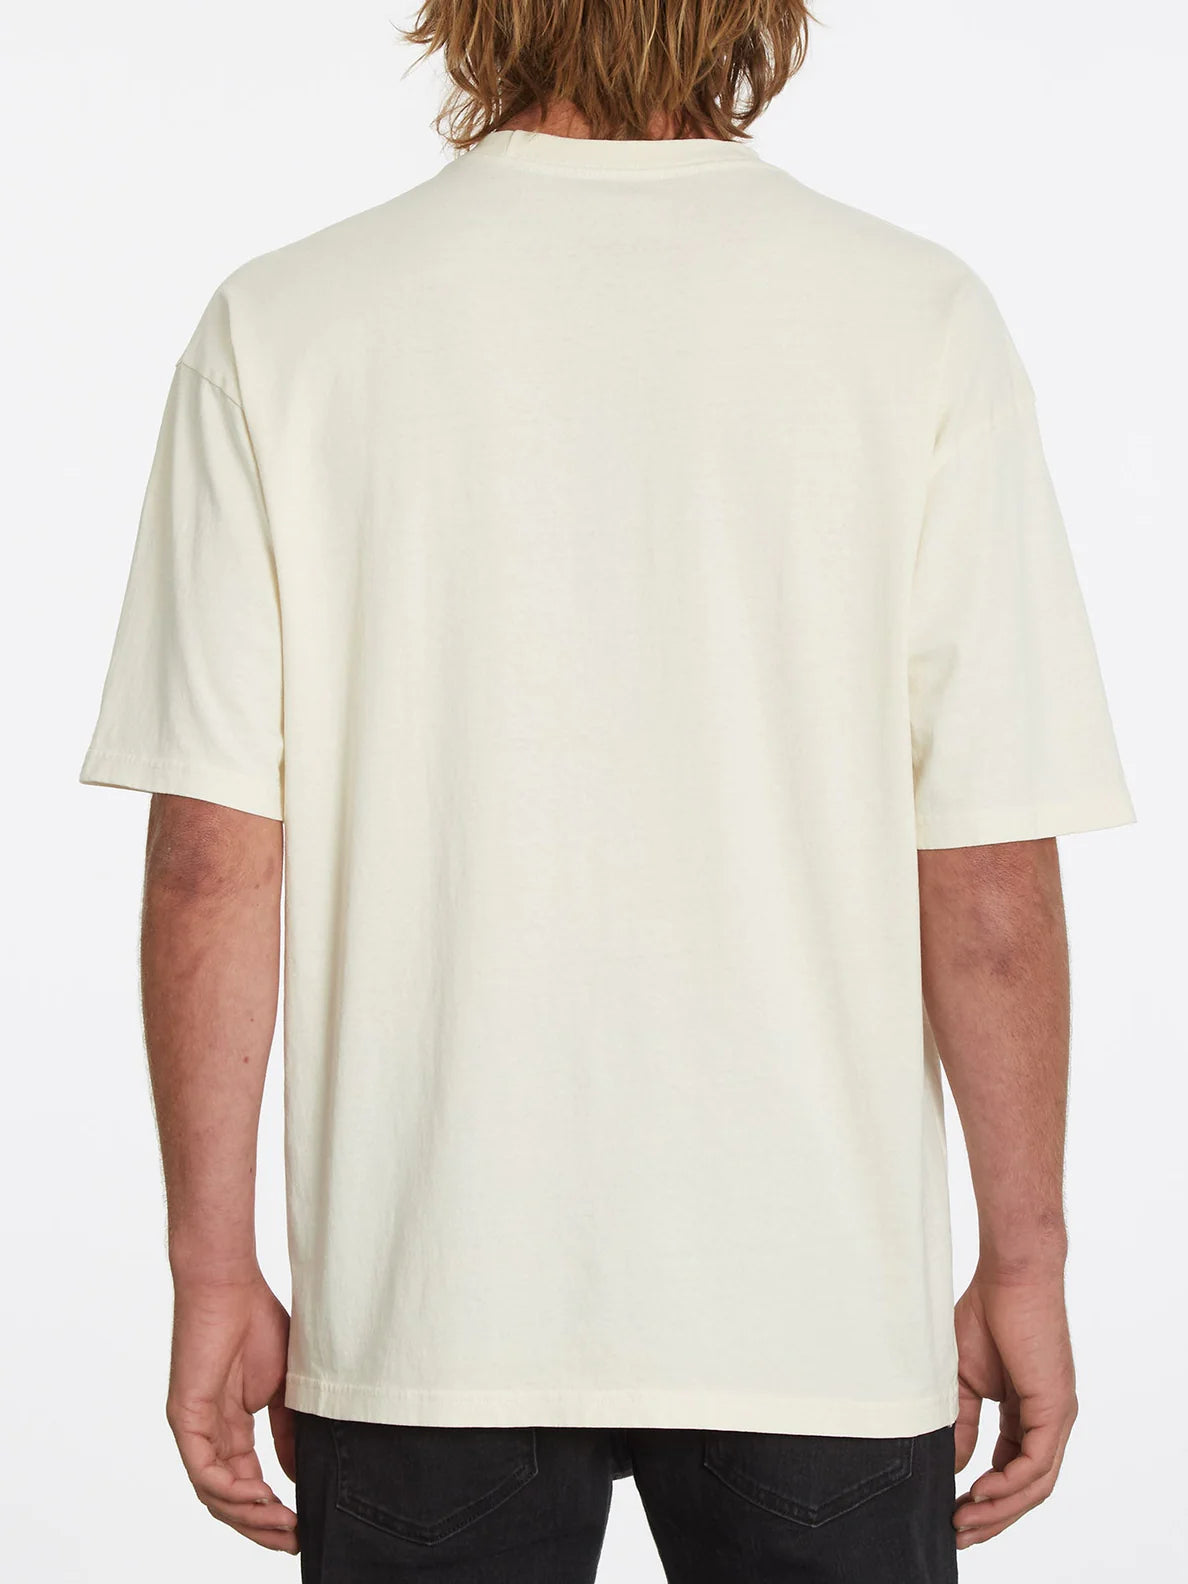 Camiseta Volcom Binik SST Whitecap Grey | Camisetas de hombre | Camisetas manga corta de hombre | Volcom Shop | surfdevils.com